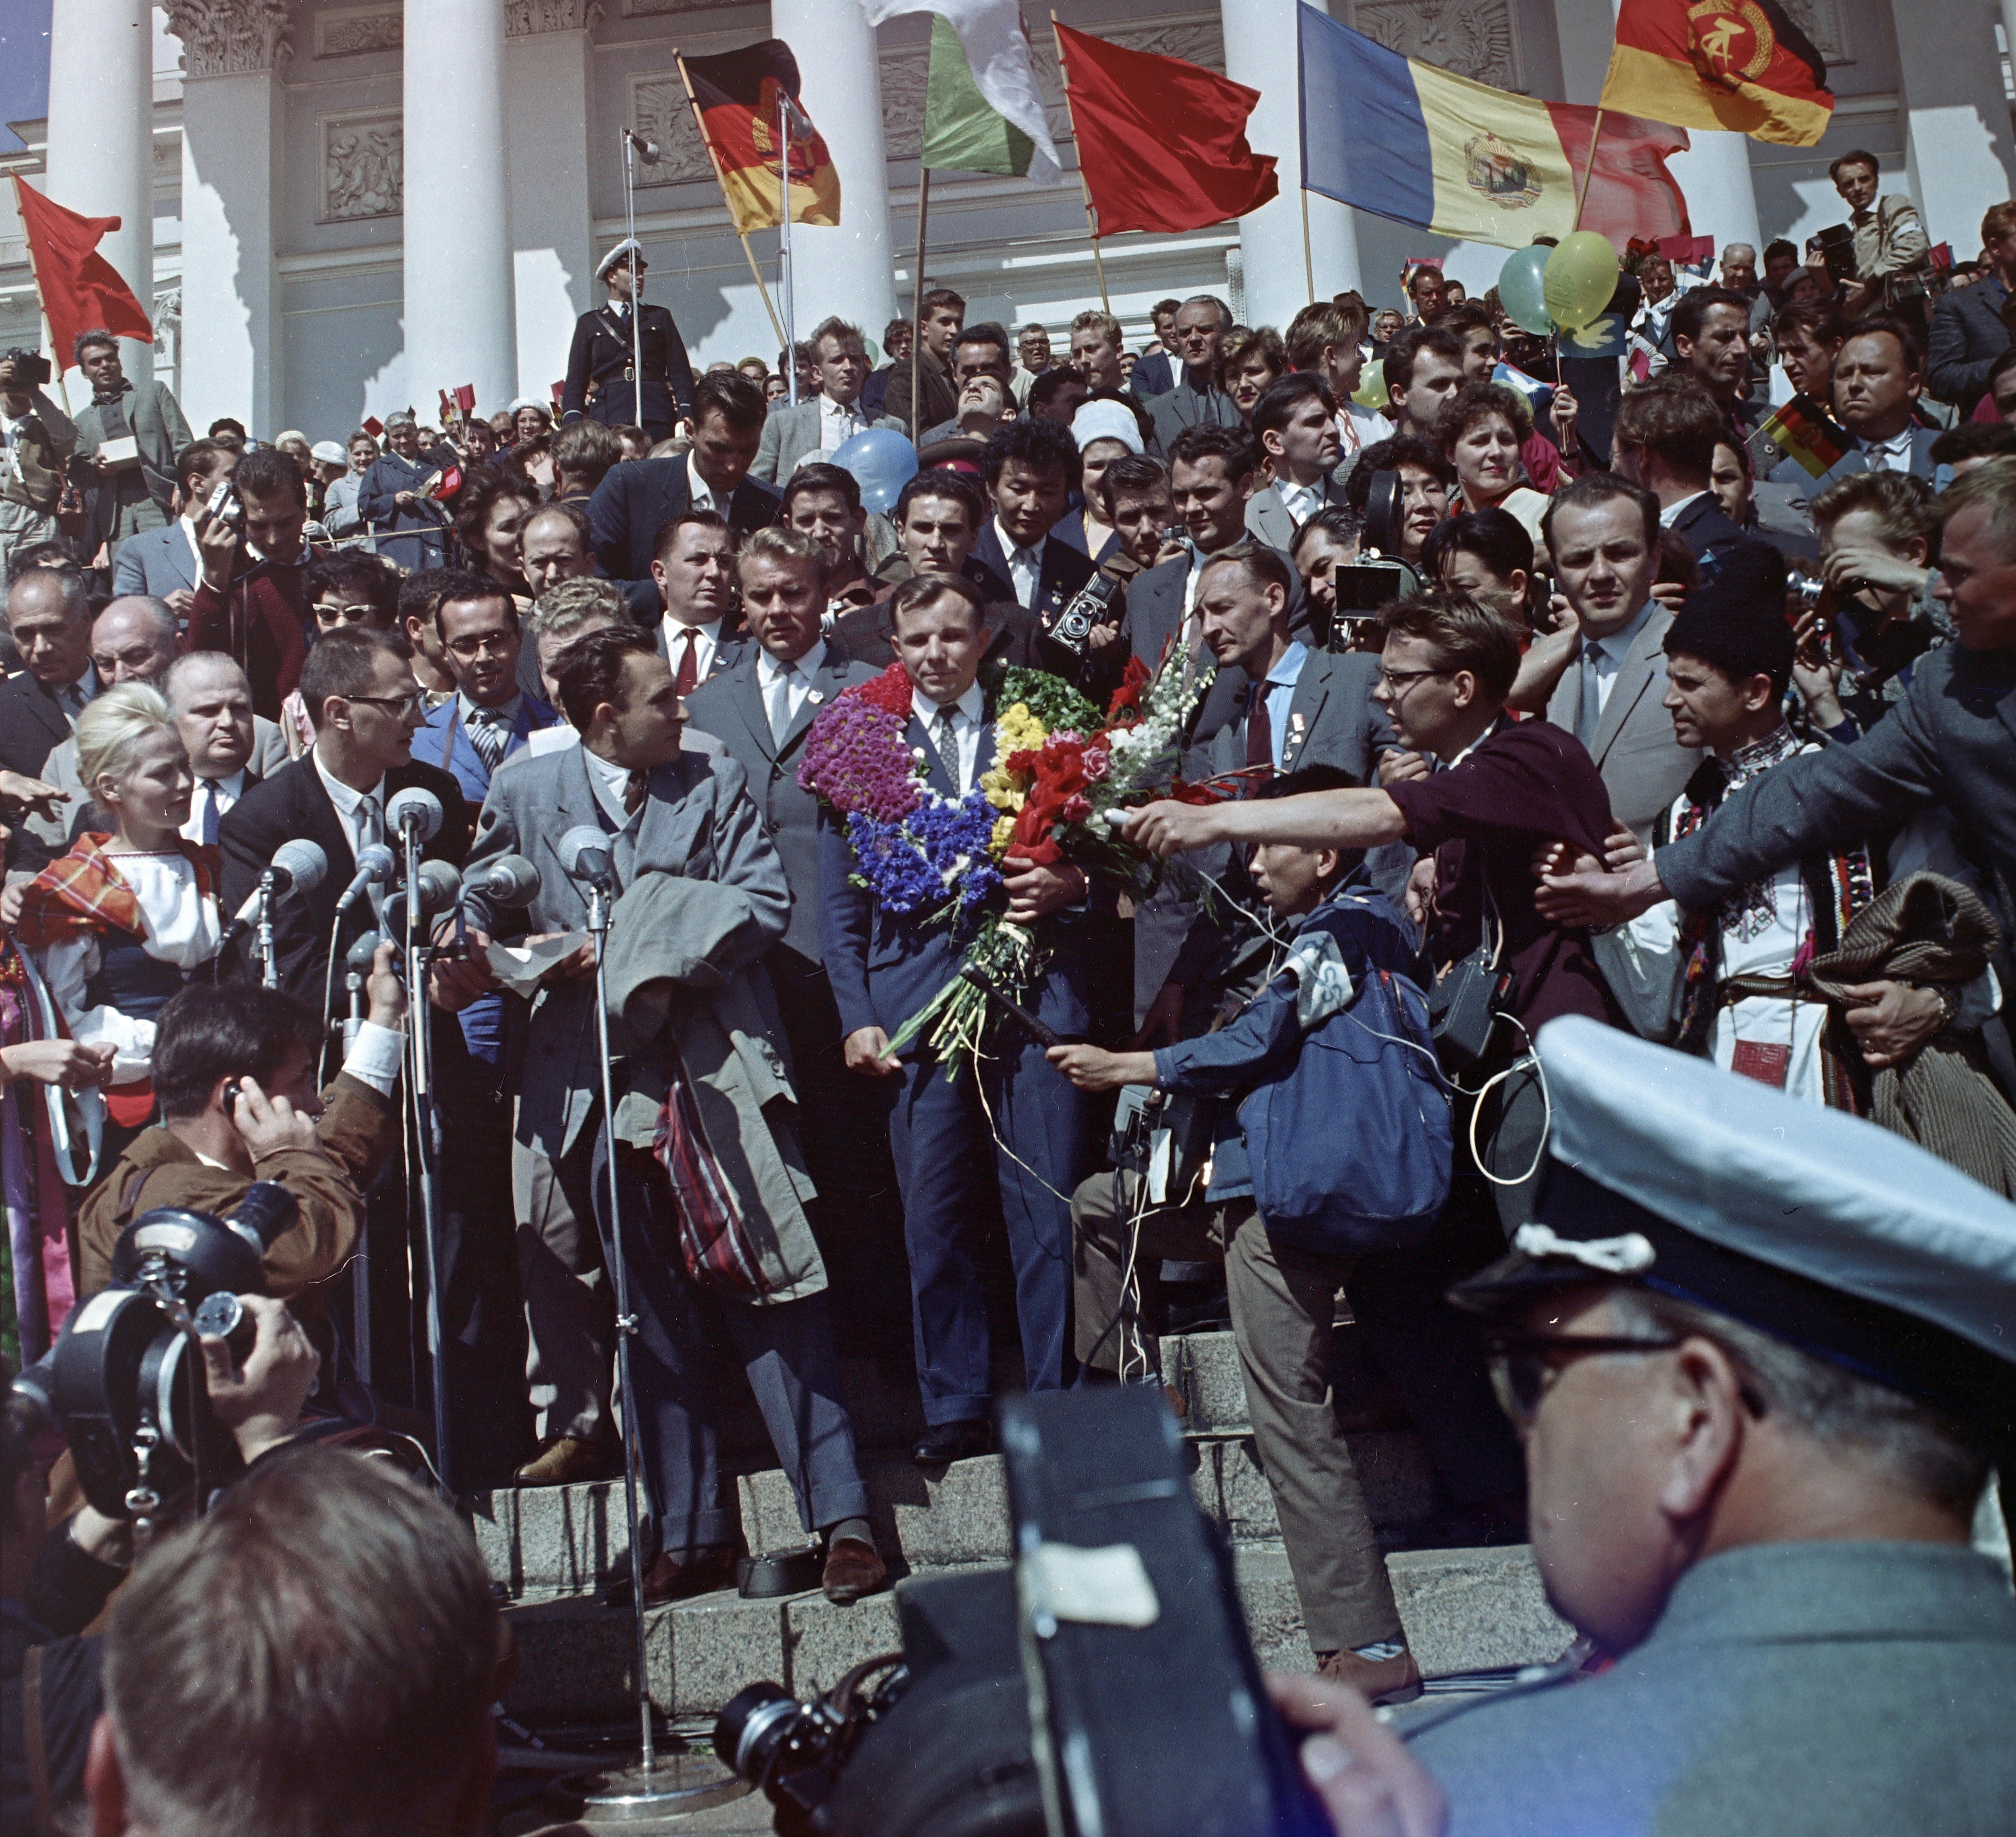 Kuva on Helsingin tuomiokirkon portaikolla. Keskellä kukitettu Yuri Gagarin. Kuva on otettu VIT: n (World Youth Meeting) aikana.